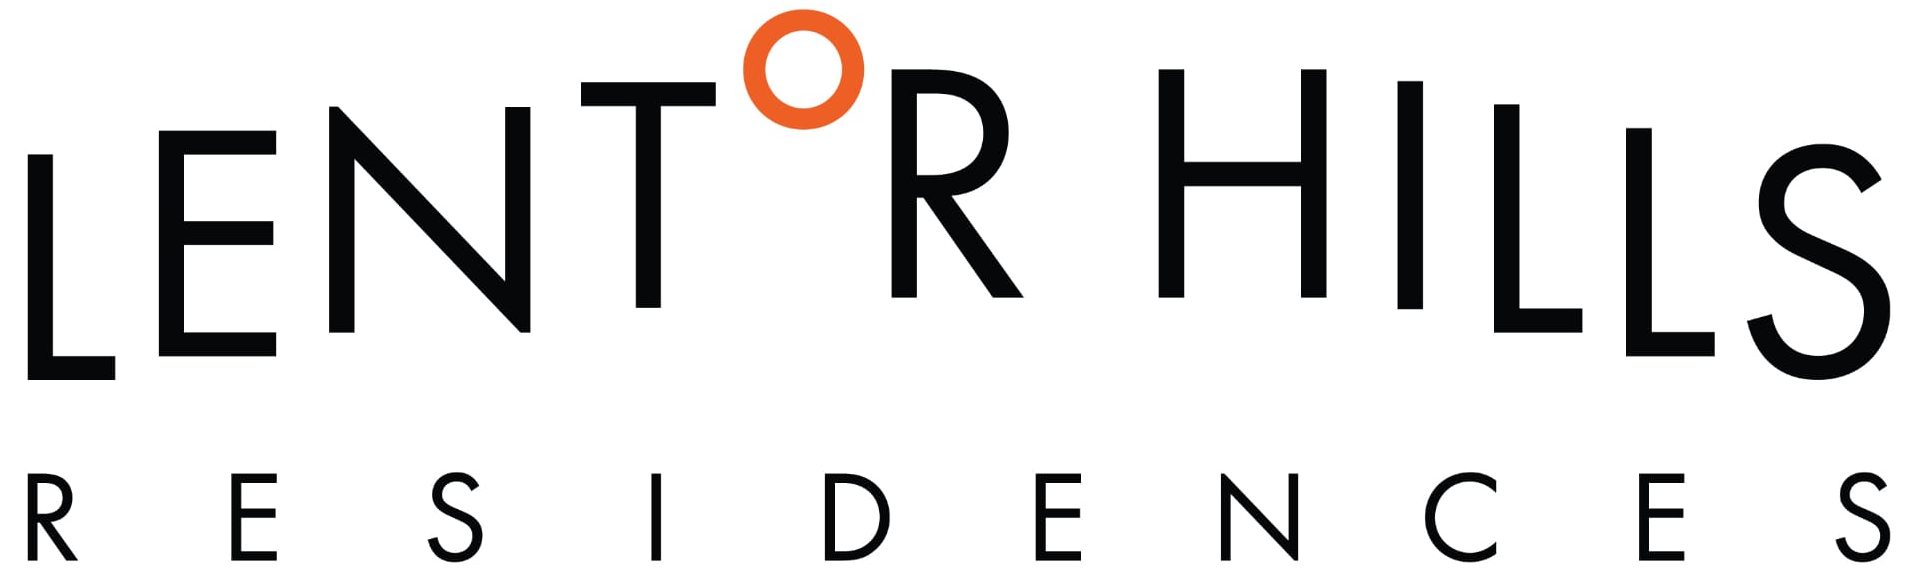 Lentor Hills Residences Logo